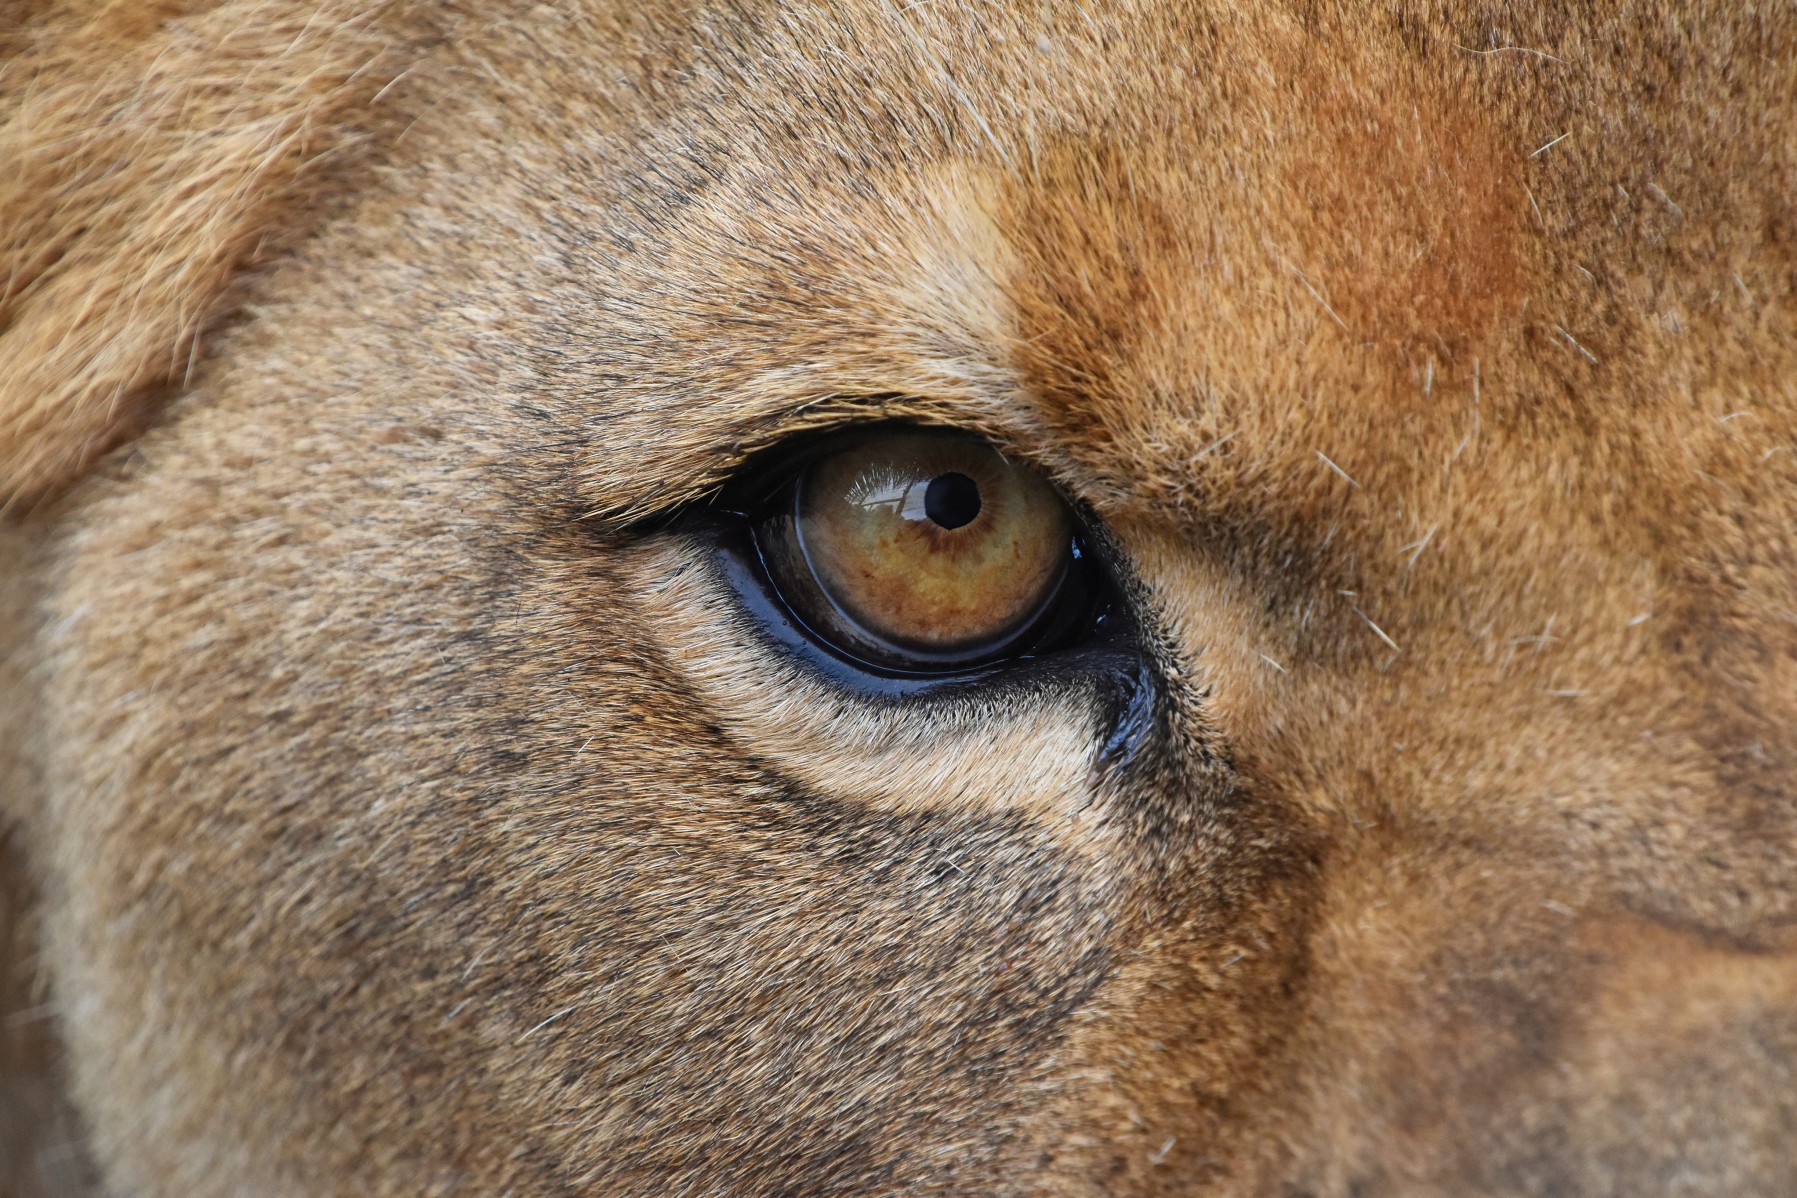 A closeup of a lion's eye